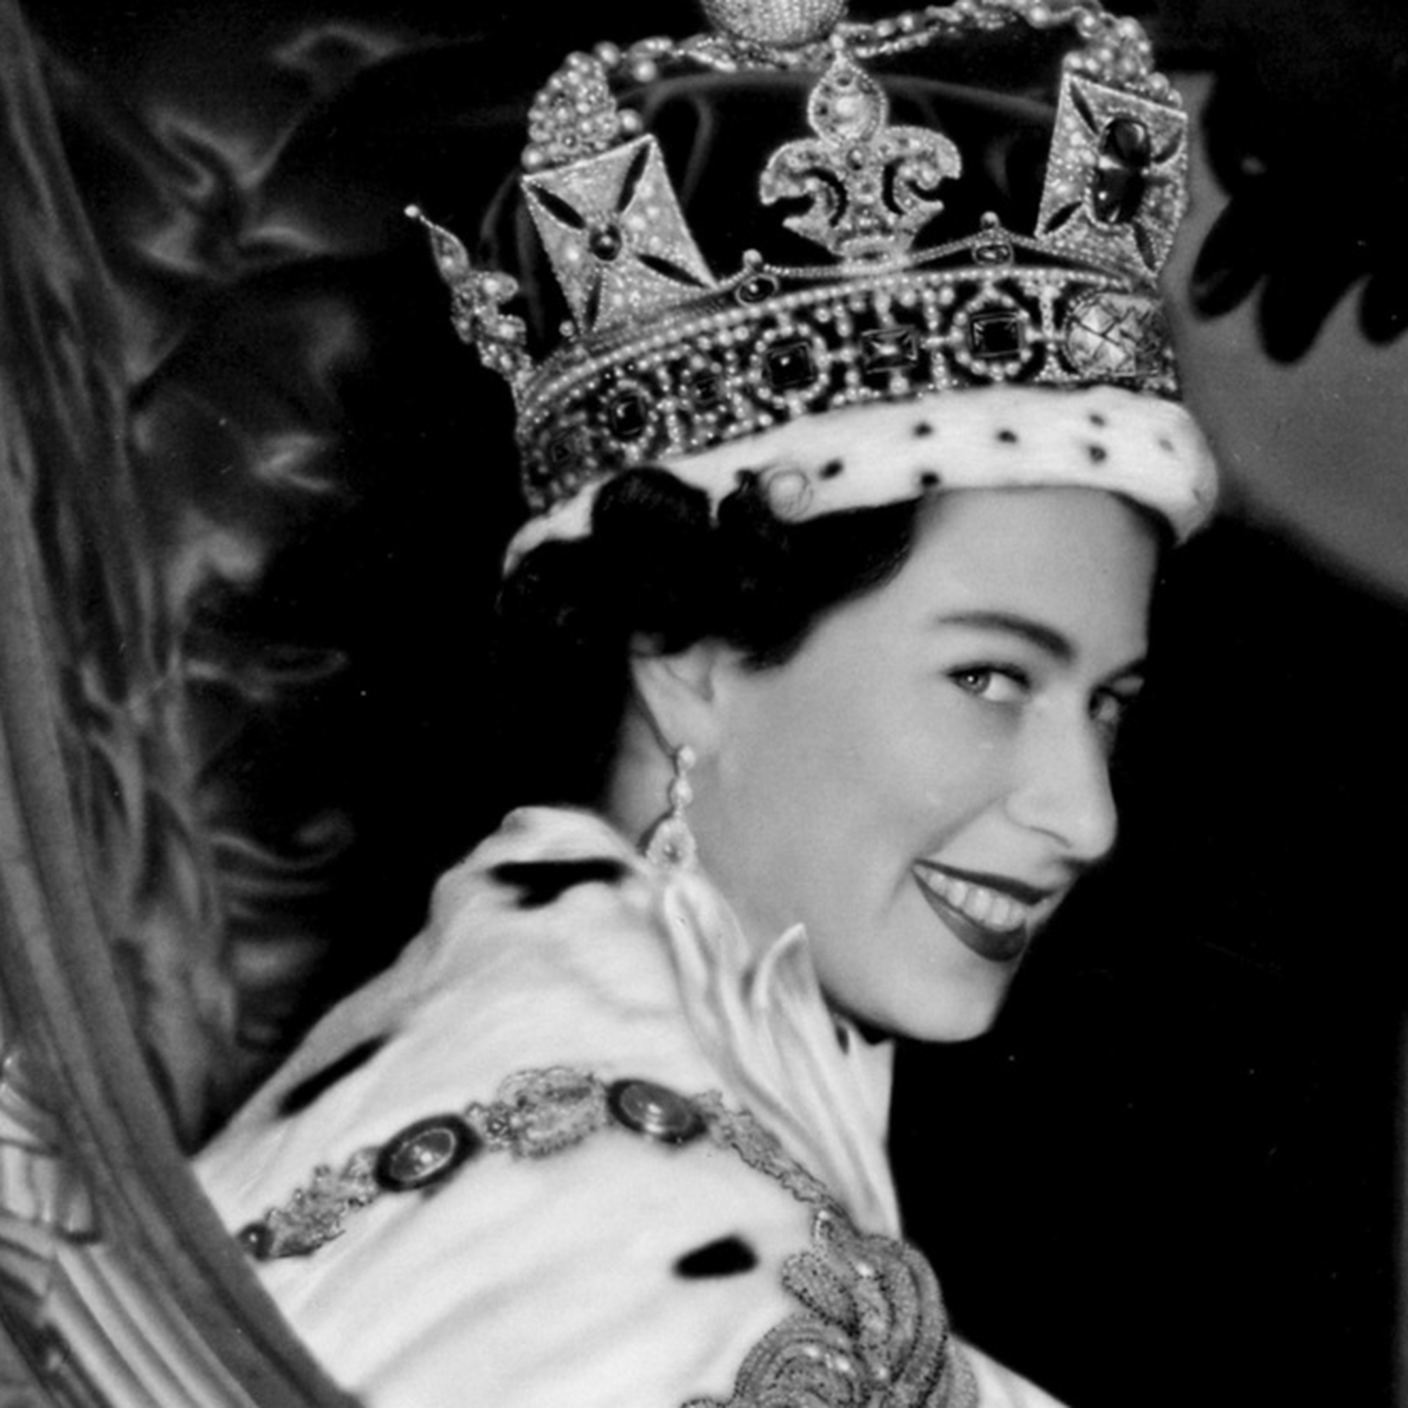 Incoronazione Regina Elisabetta II, 2 giugno 1953, Abbazia di Westminster, Londra